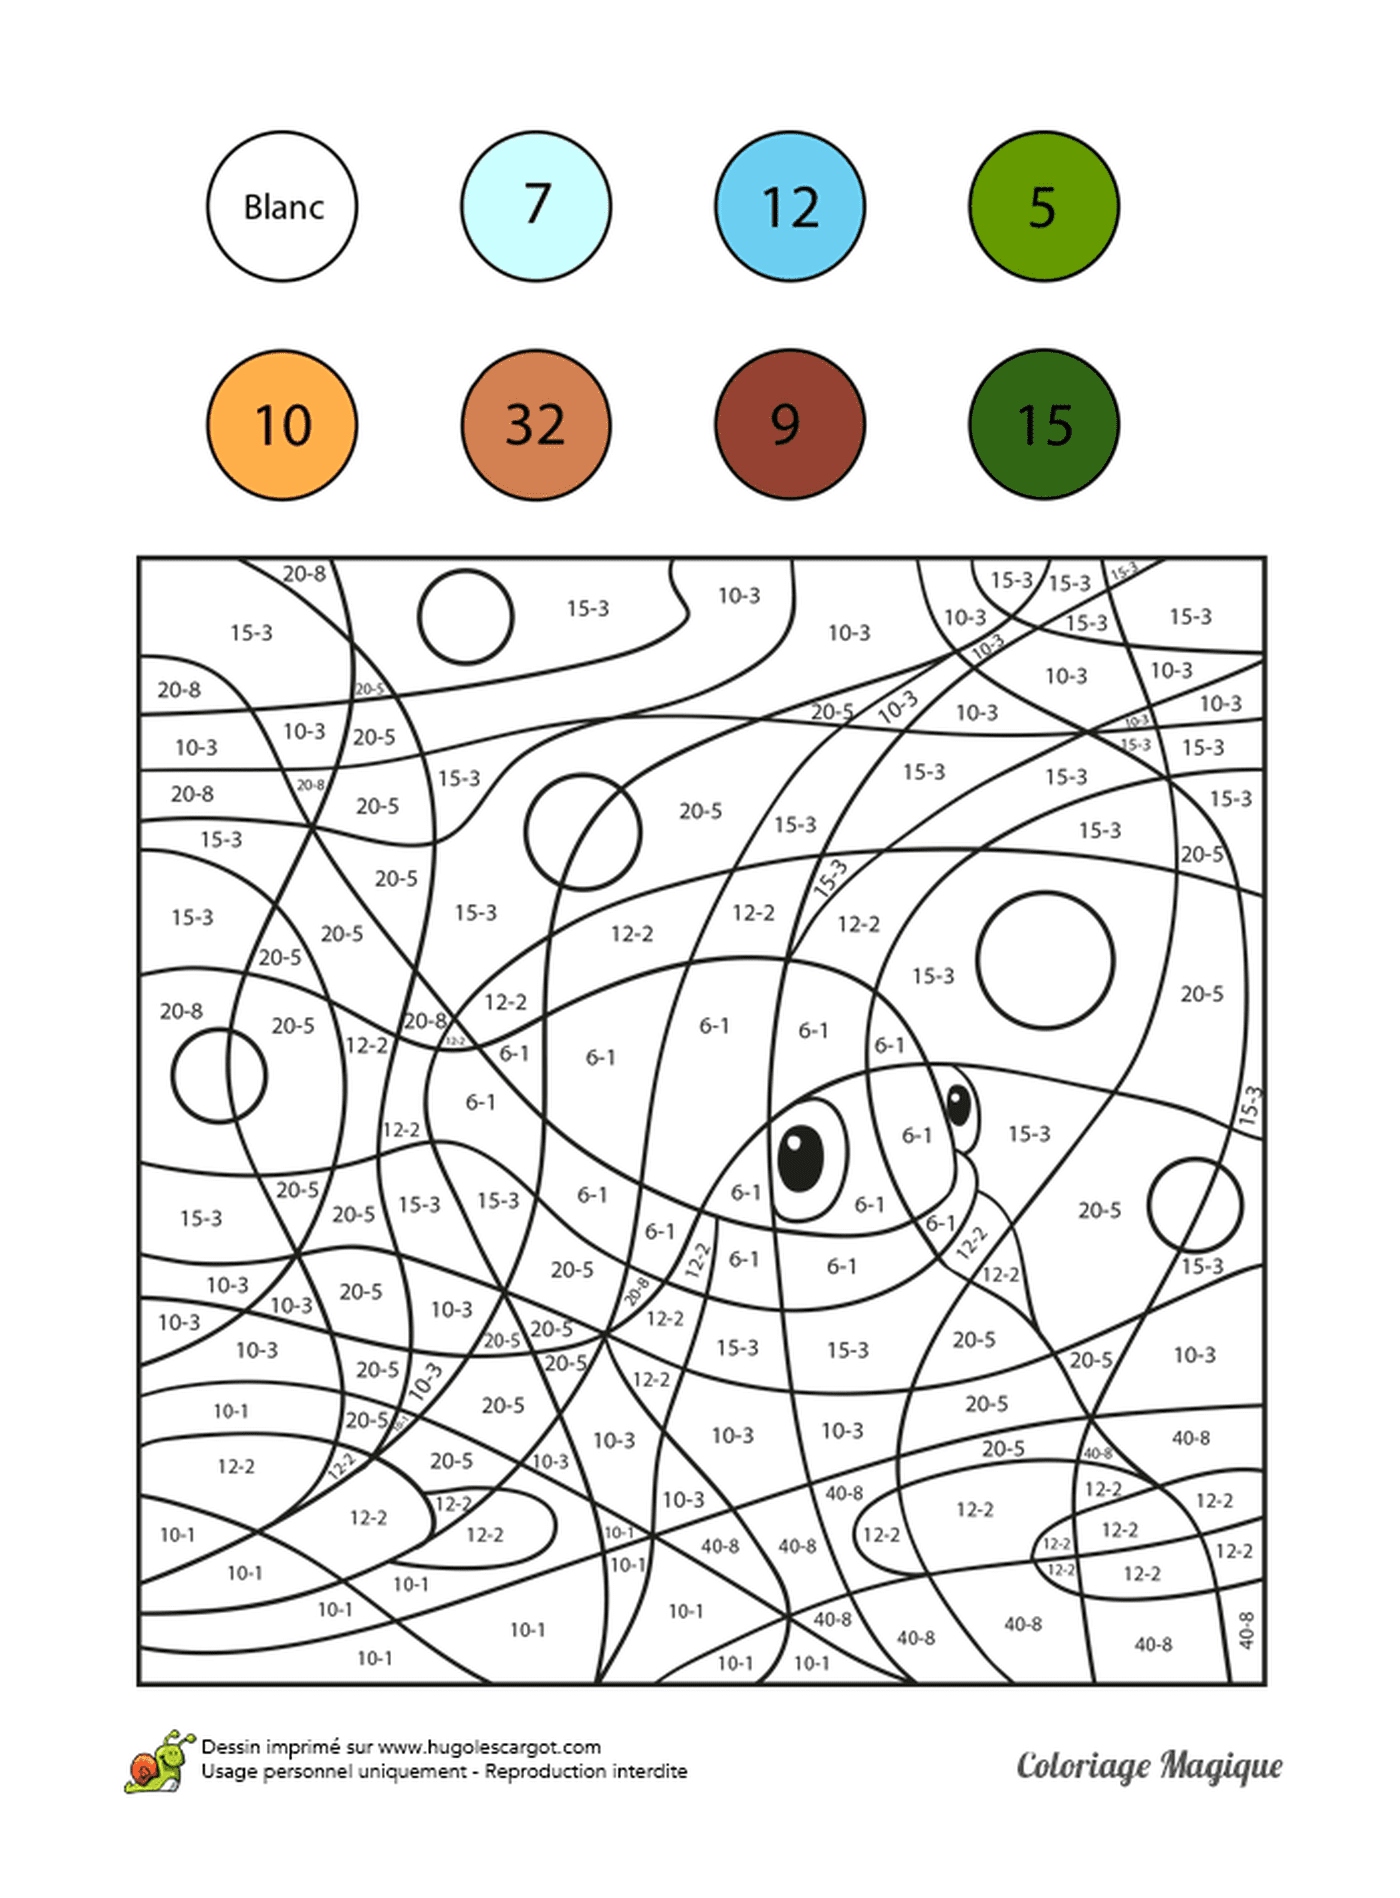  संख्या द्वारा रंग बनाने में एक वयस्क 